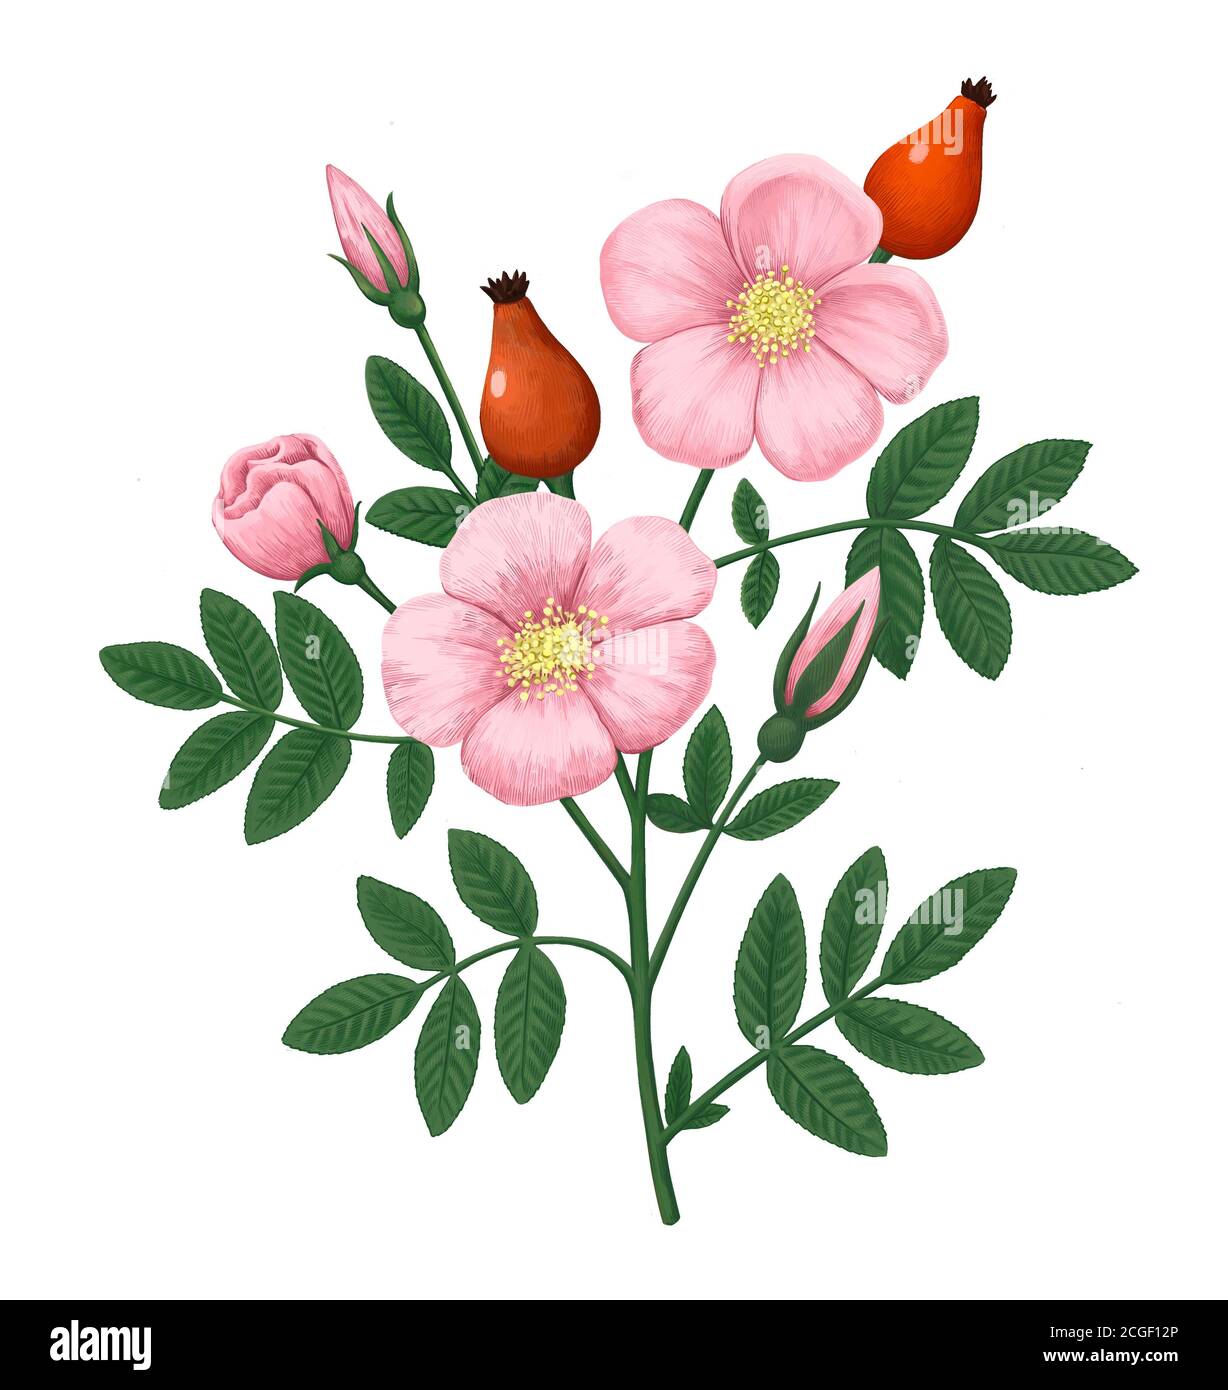 Vintage botanical illustration with dog-rose flowers, berries